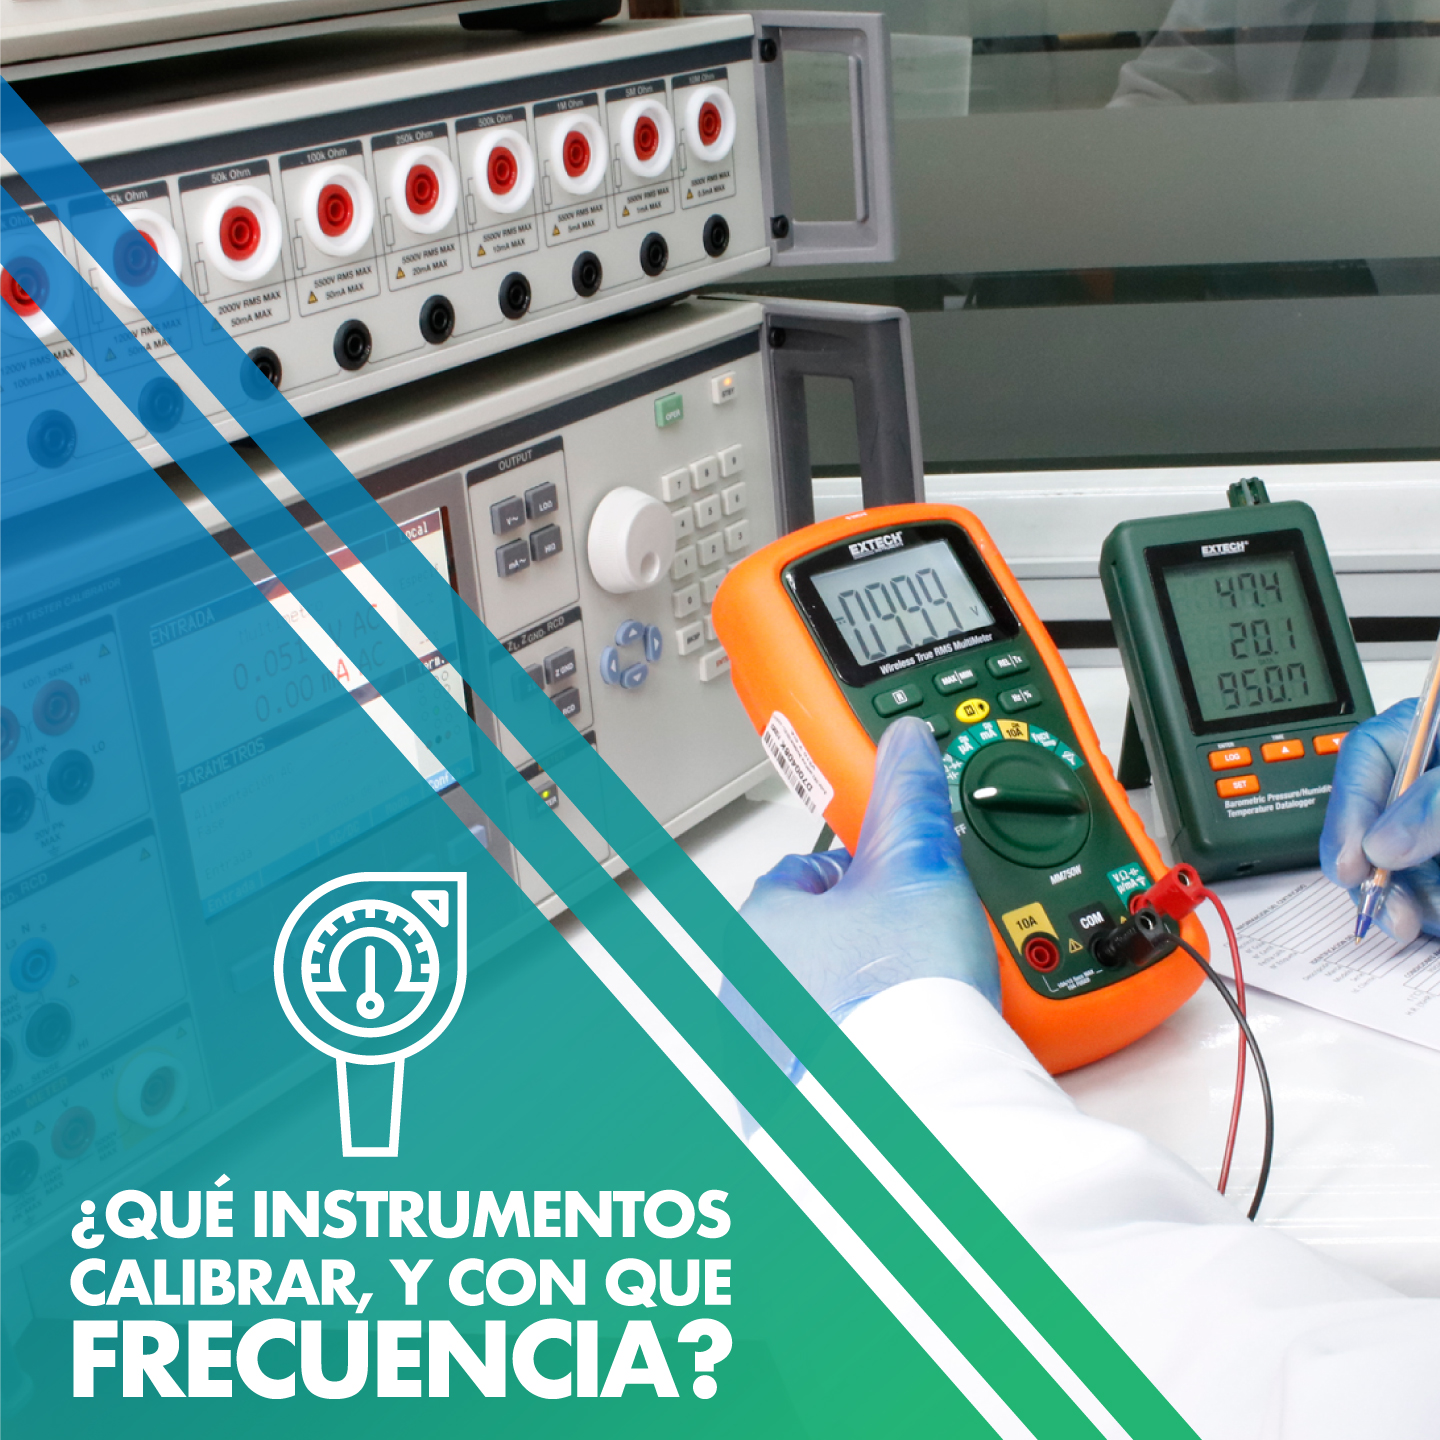 ¿Qué instrumentos requieren ser calibrados y con qué frecuencia se debe hacer?